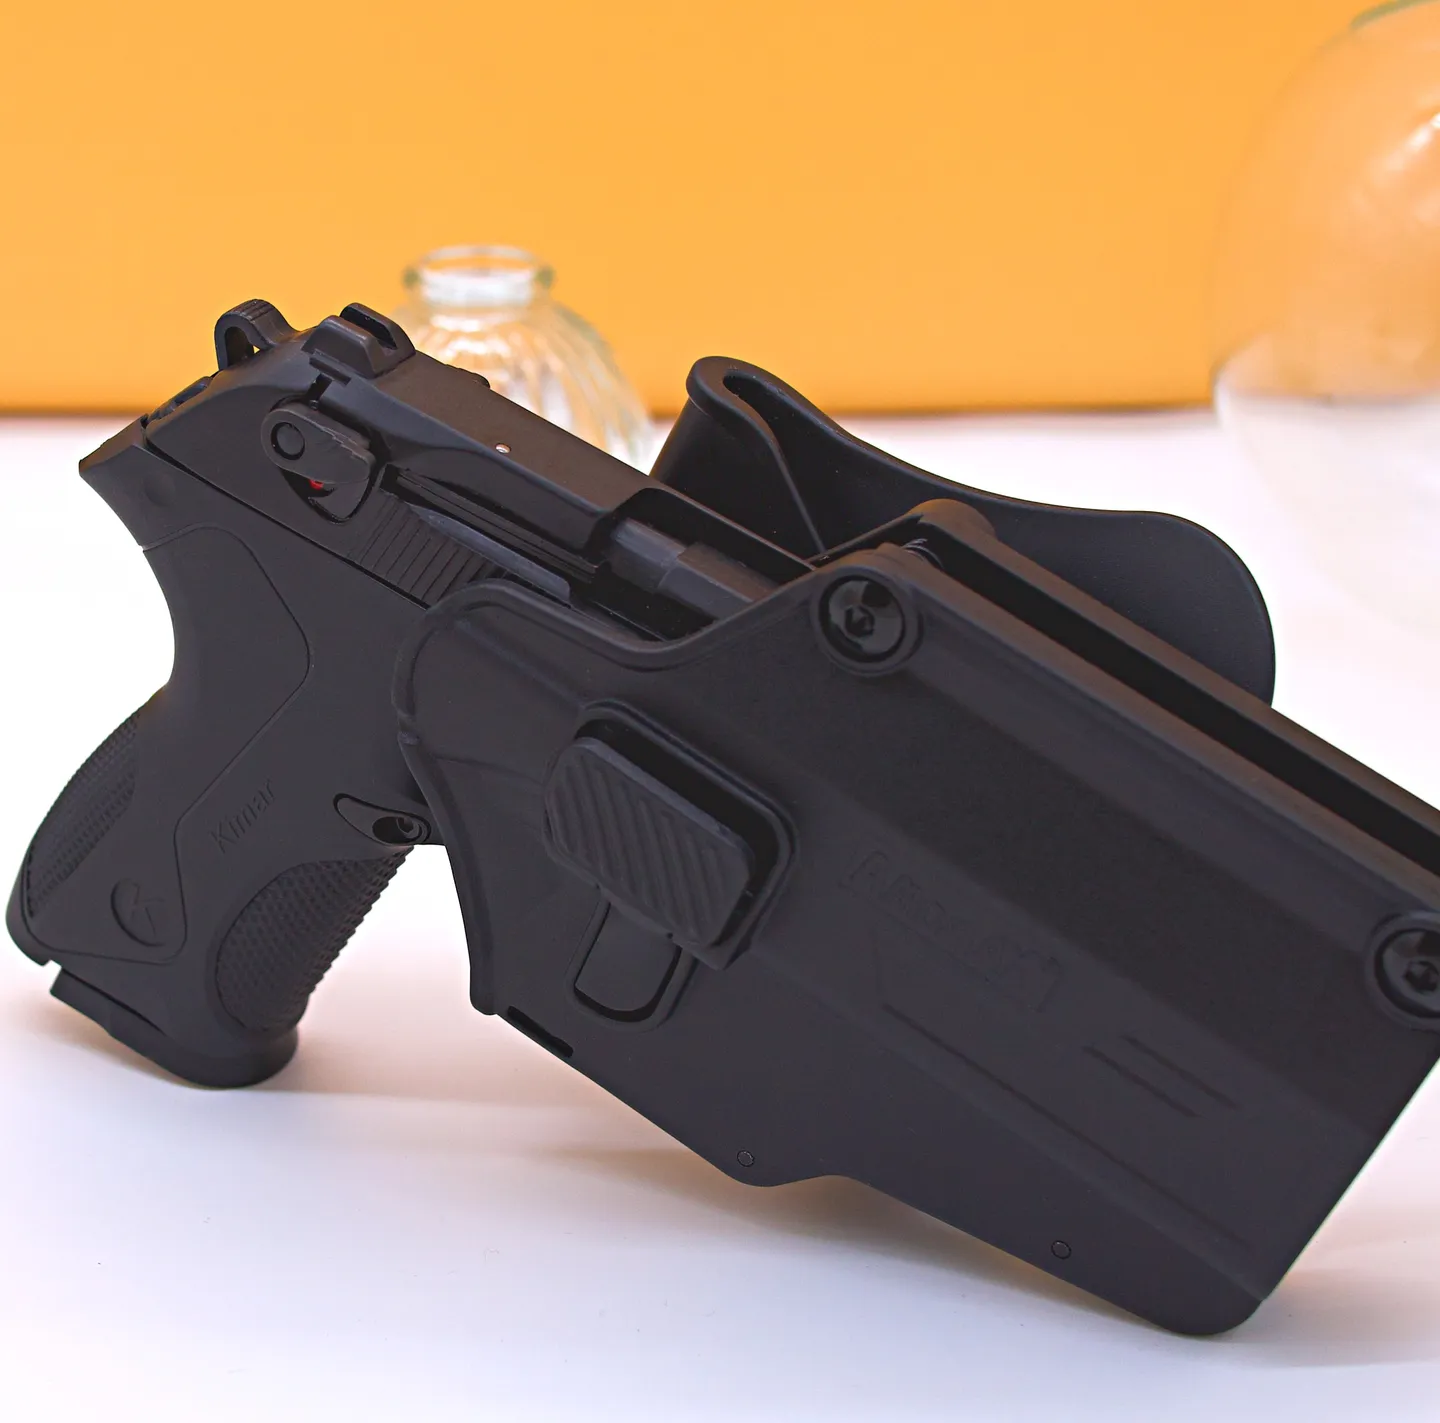 Accesorios y Equipamientos - Funda para pistolas multifunción Amomax: compatible con varias plataformas